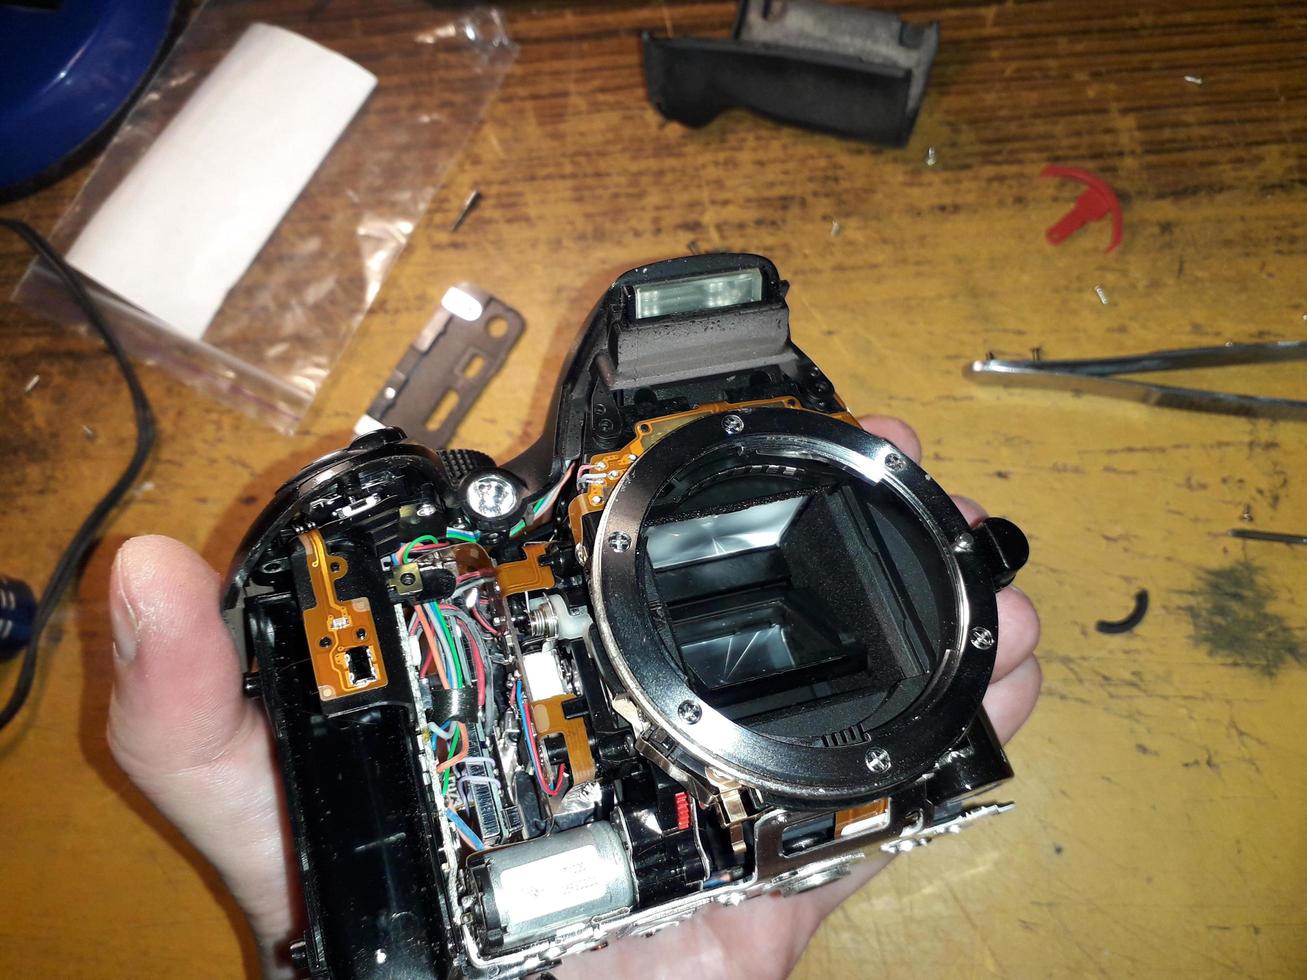 réparation d'un appareil photo reflex numérique, microélectronique